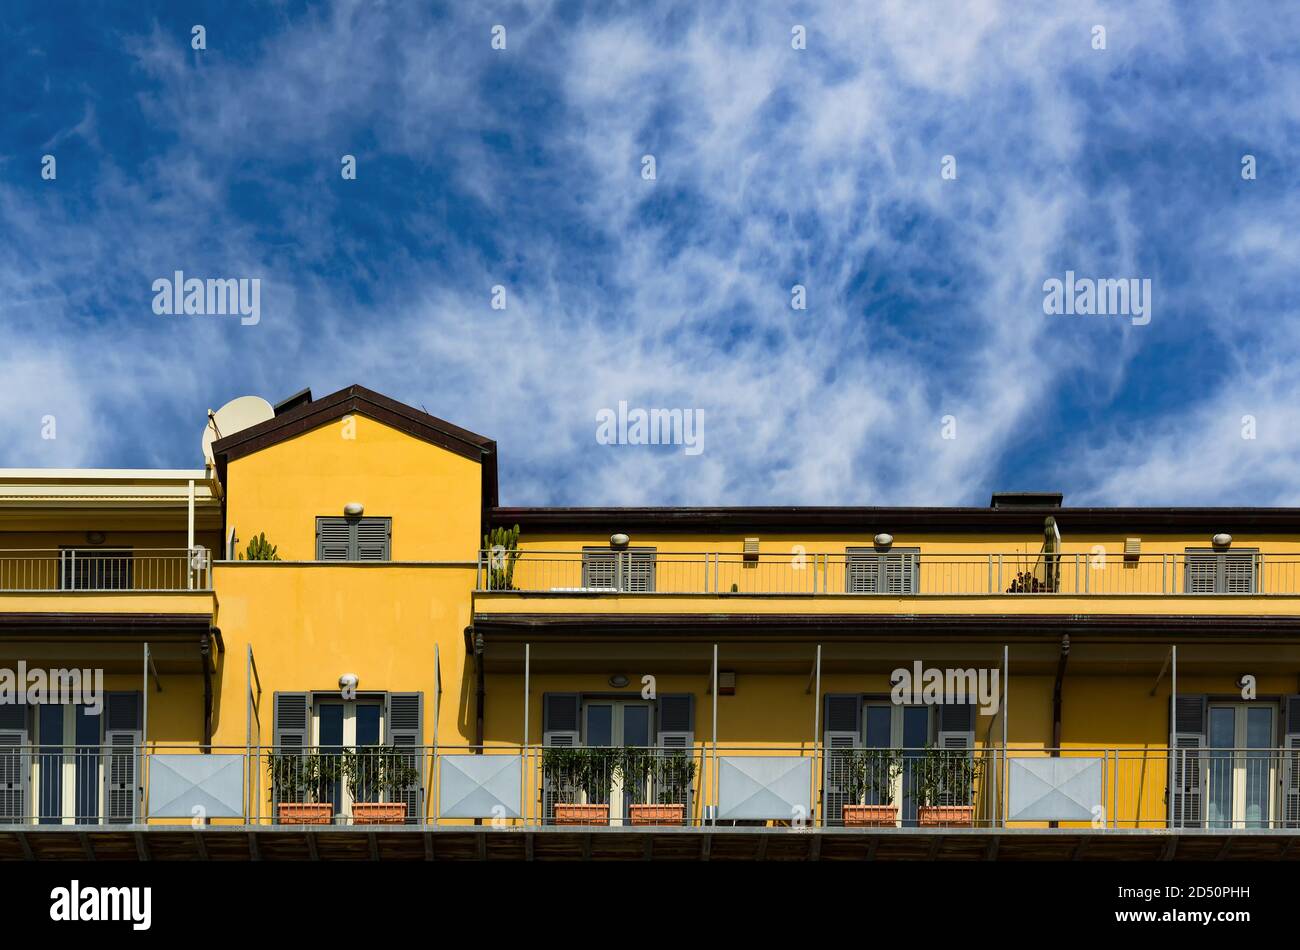 Immeuble d'appartements à Savona, Italie. Façade jaune avec rangées de balcons. Espace de copie sur ciel texturé. Banque D'Images